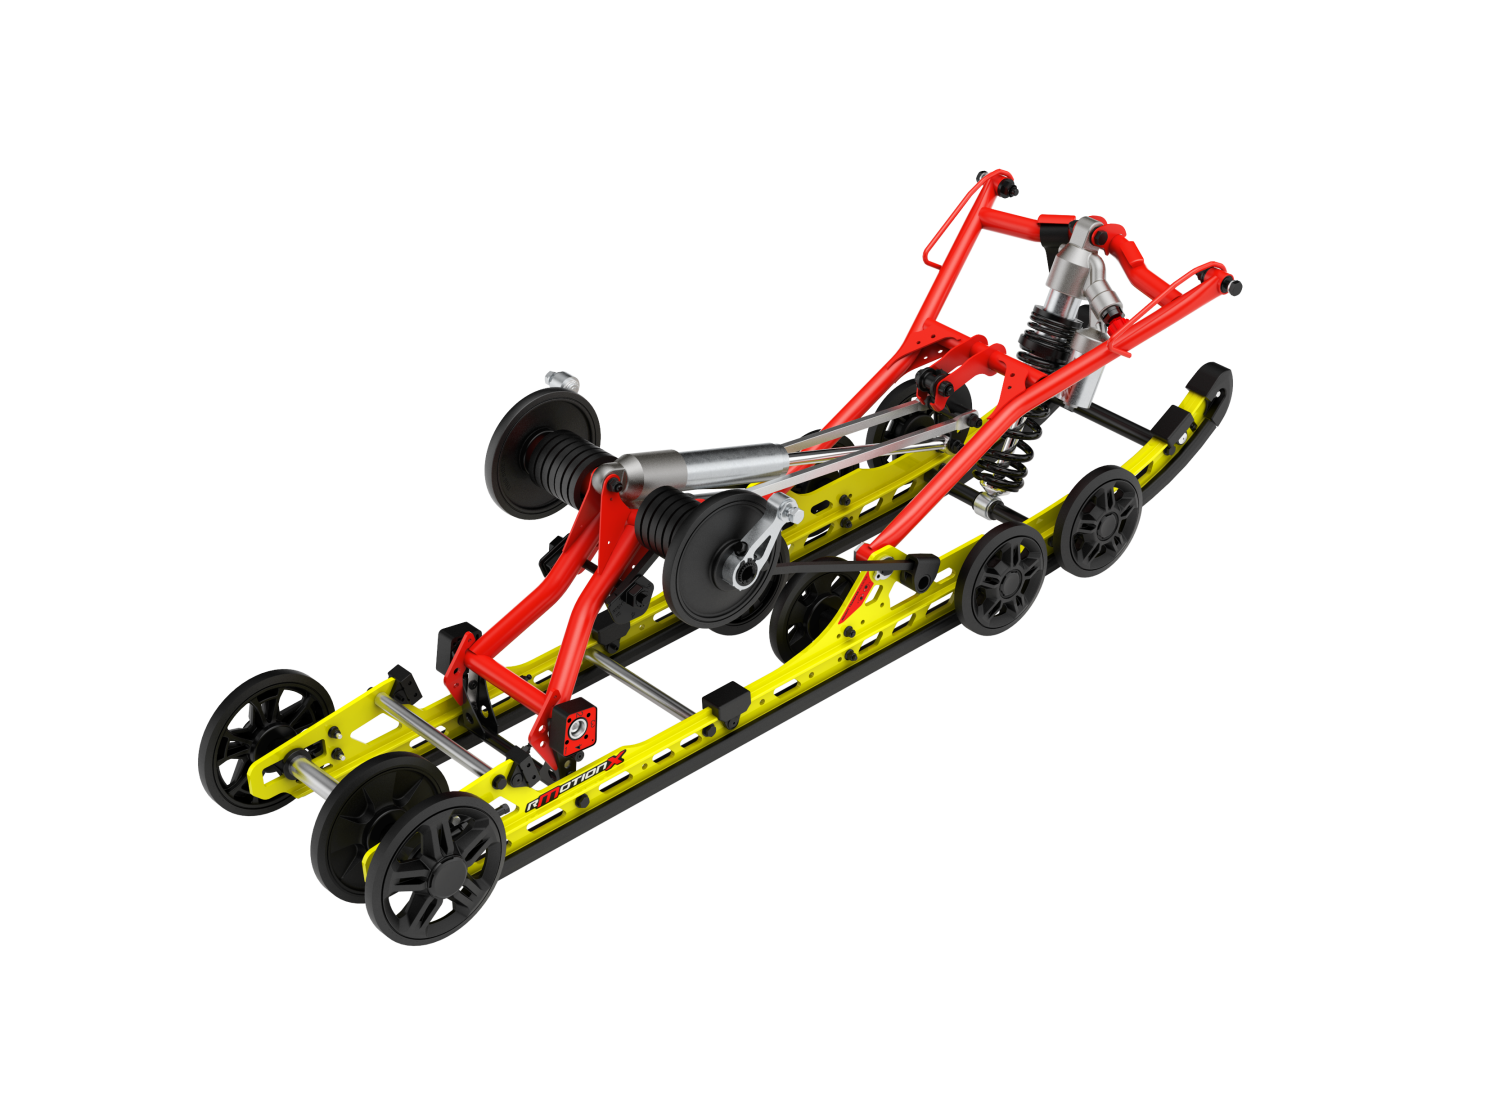 Ski-Doo rMotion X Rear Suspension